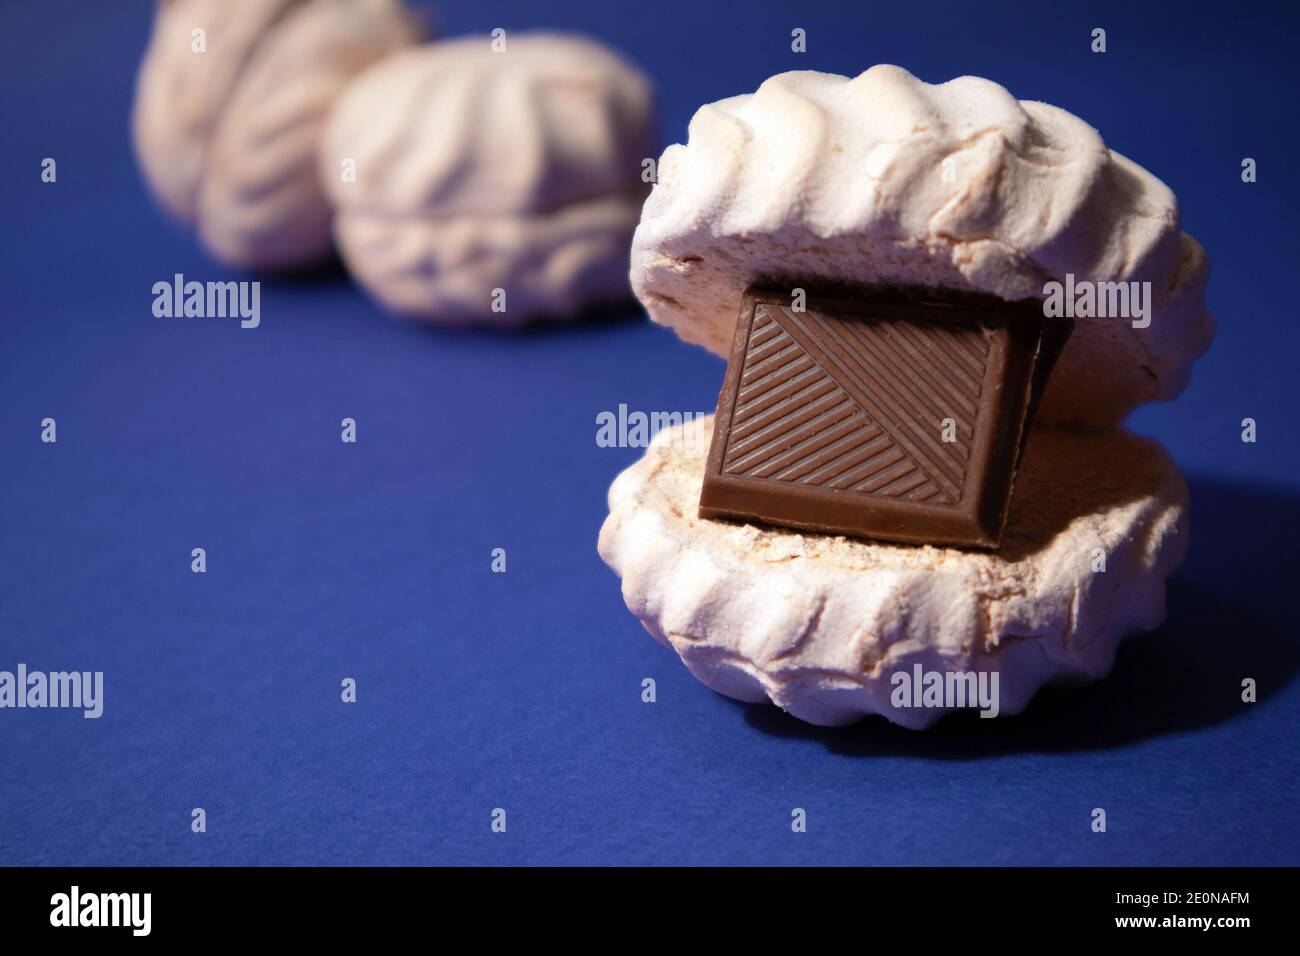 zephyr bianco con mattonella di cioccolato fondente all'interno contro trendy sfondo blu Foto Stock